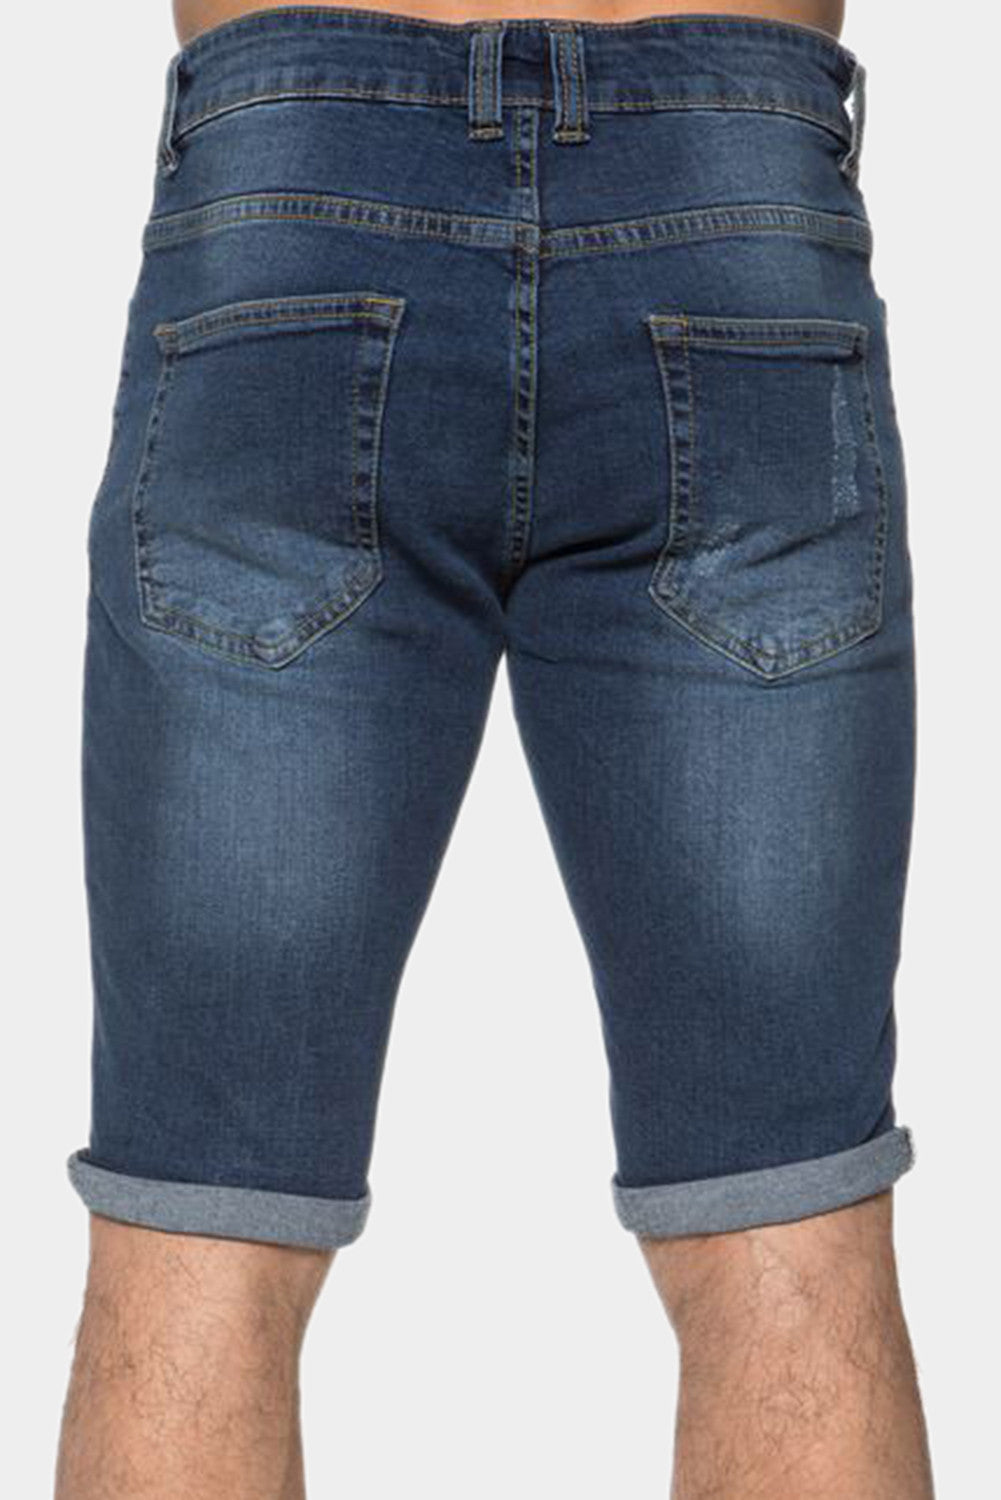 Sky Blue Skull Graphic Patchwork Distressed Skinny Fit Men's Jeans Men's Pants JT's Designer Fashion